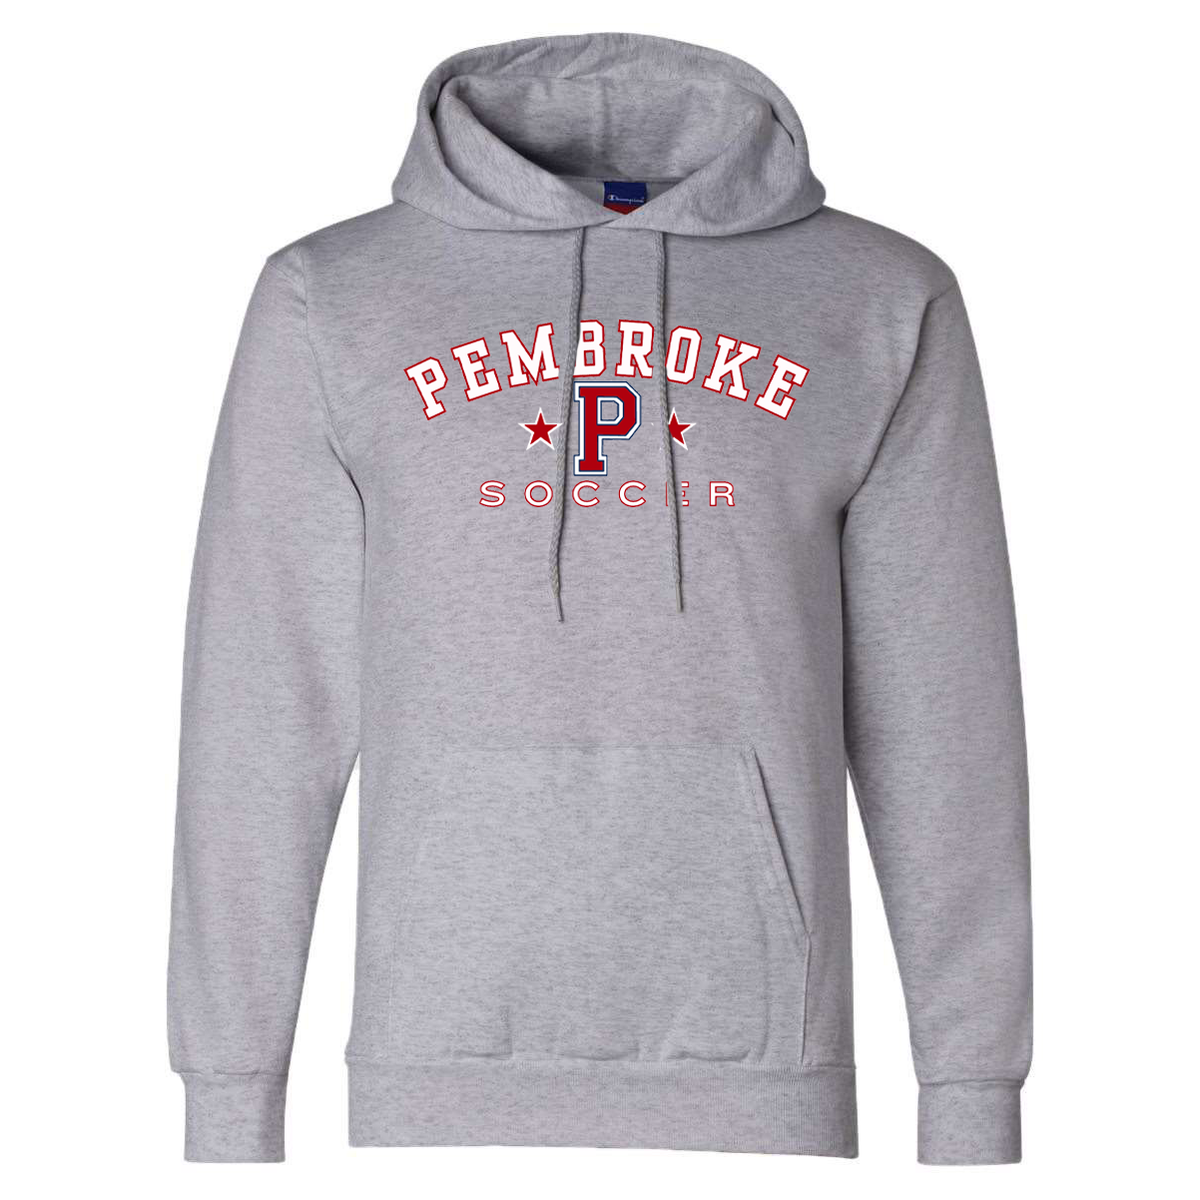 Pembroke Soccer Champion Powerblend Hooded Sweatshirt